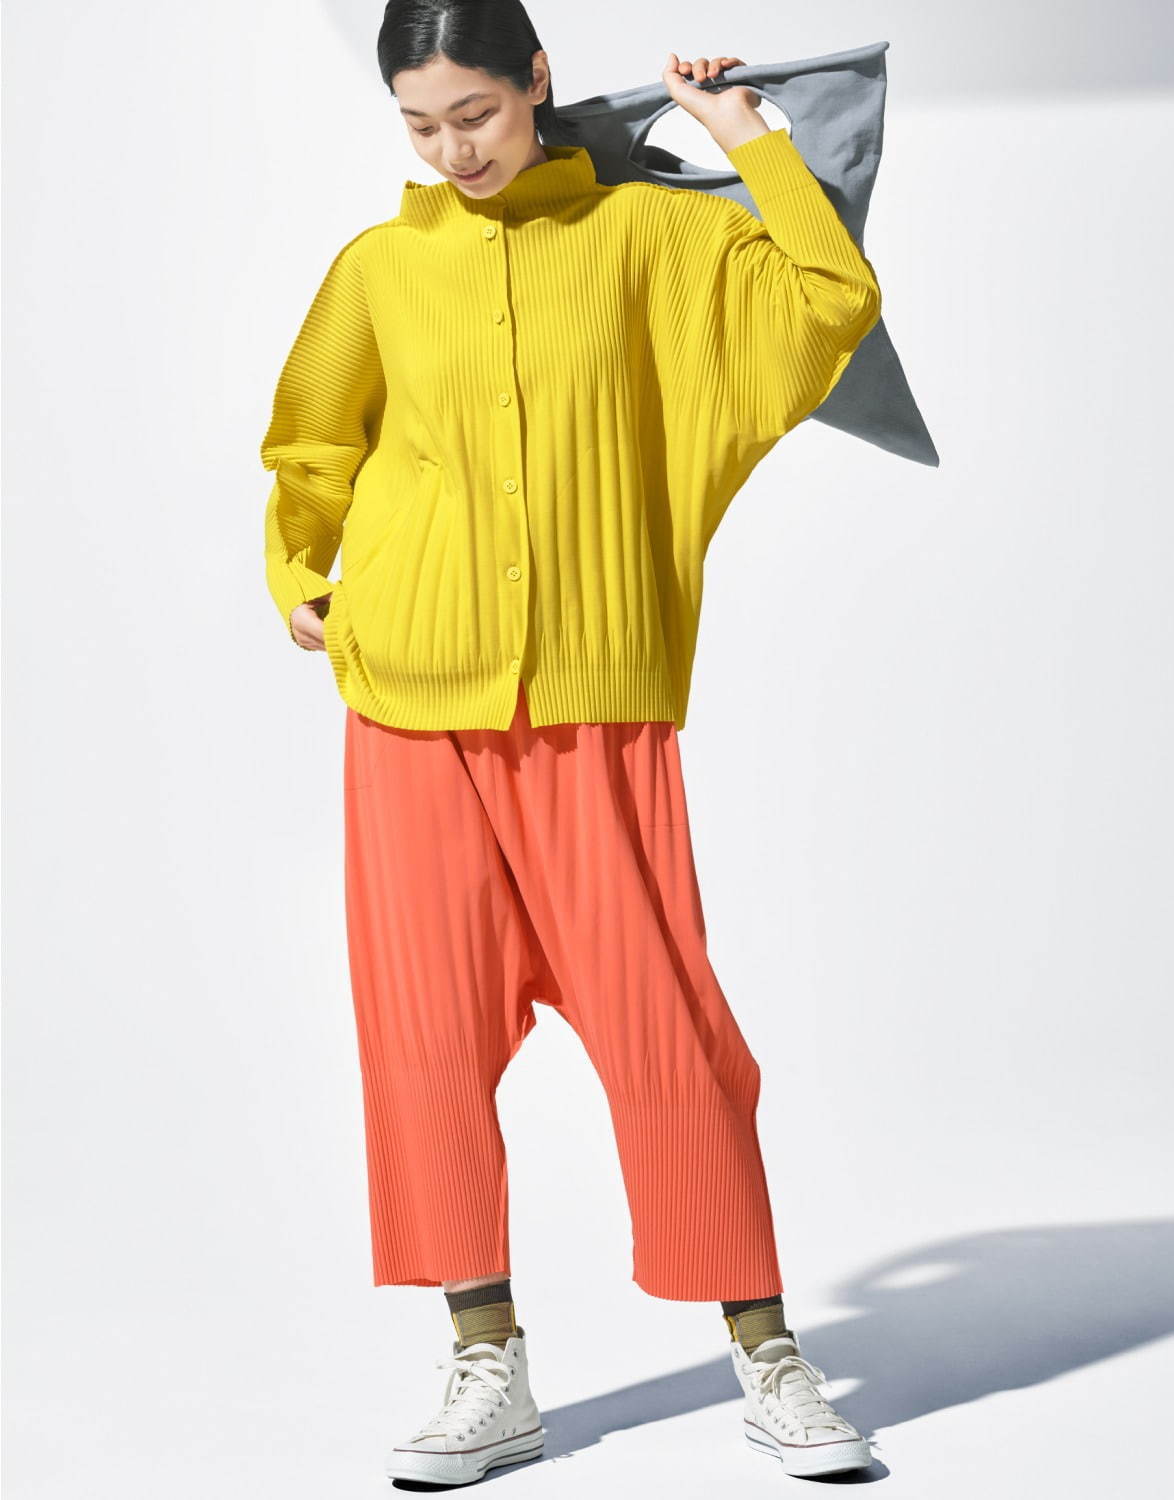 ミー イッセイ ミヤケの新作アイテム、“消しプリーツ”のカーディガンや四角形のハンドプリーツバッグ - ファッションプレス